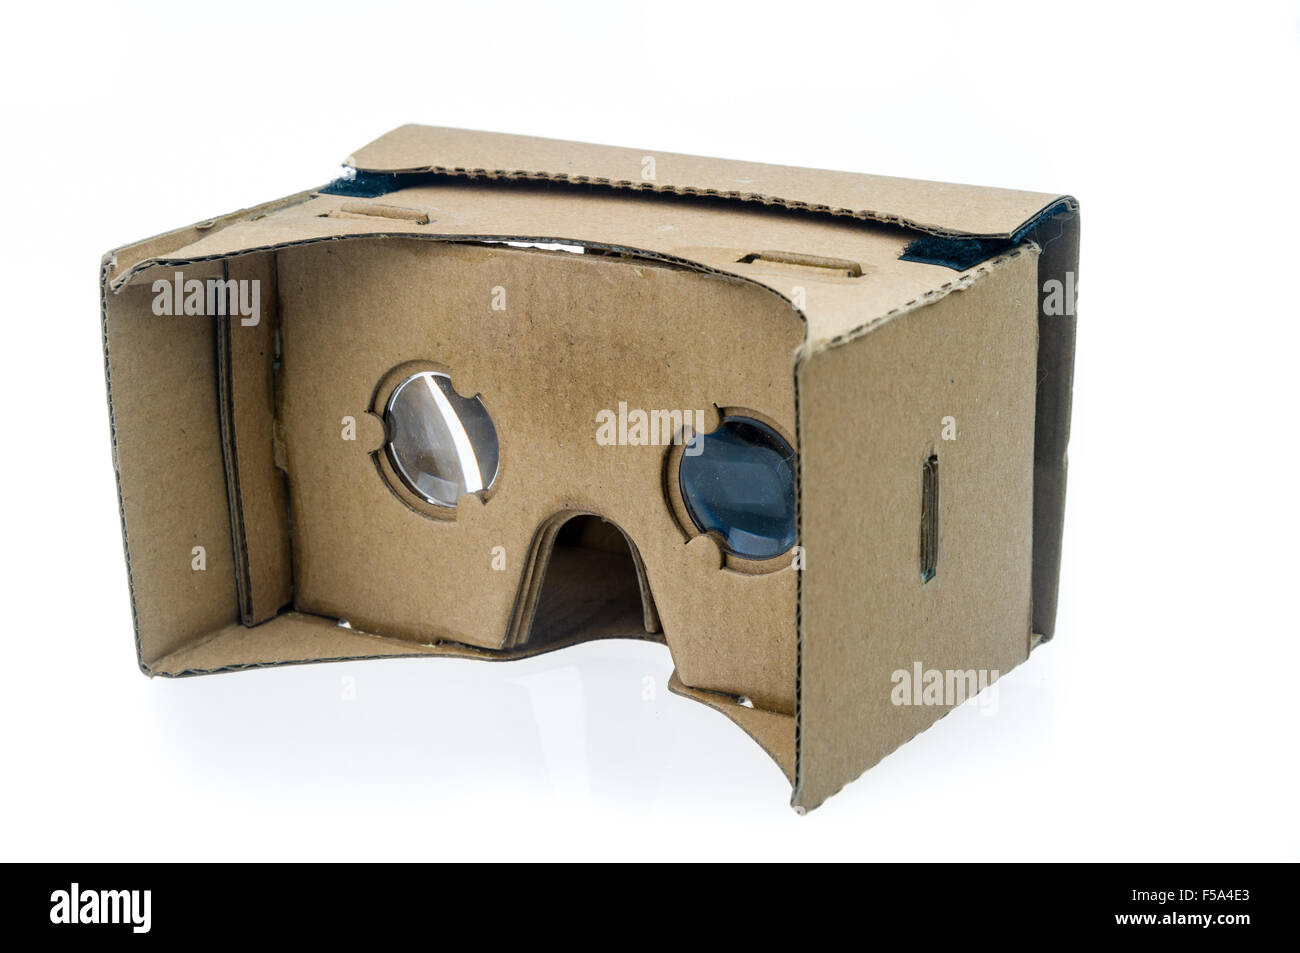 Carton Google, une pièce jointe de réalité virtuelle 3D pour les smartphones Banque D'Images